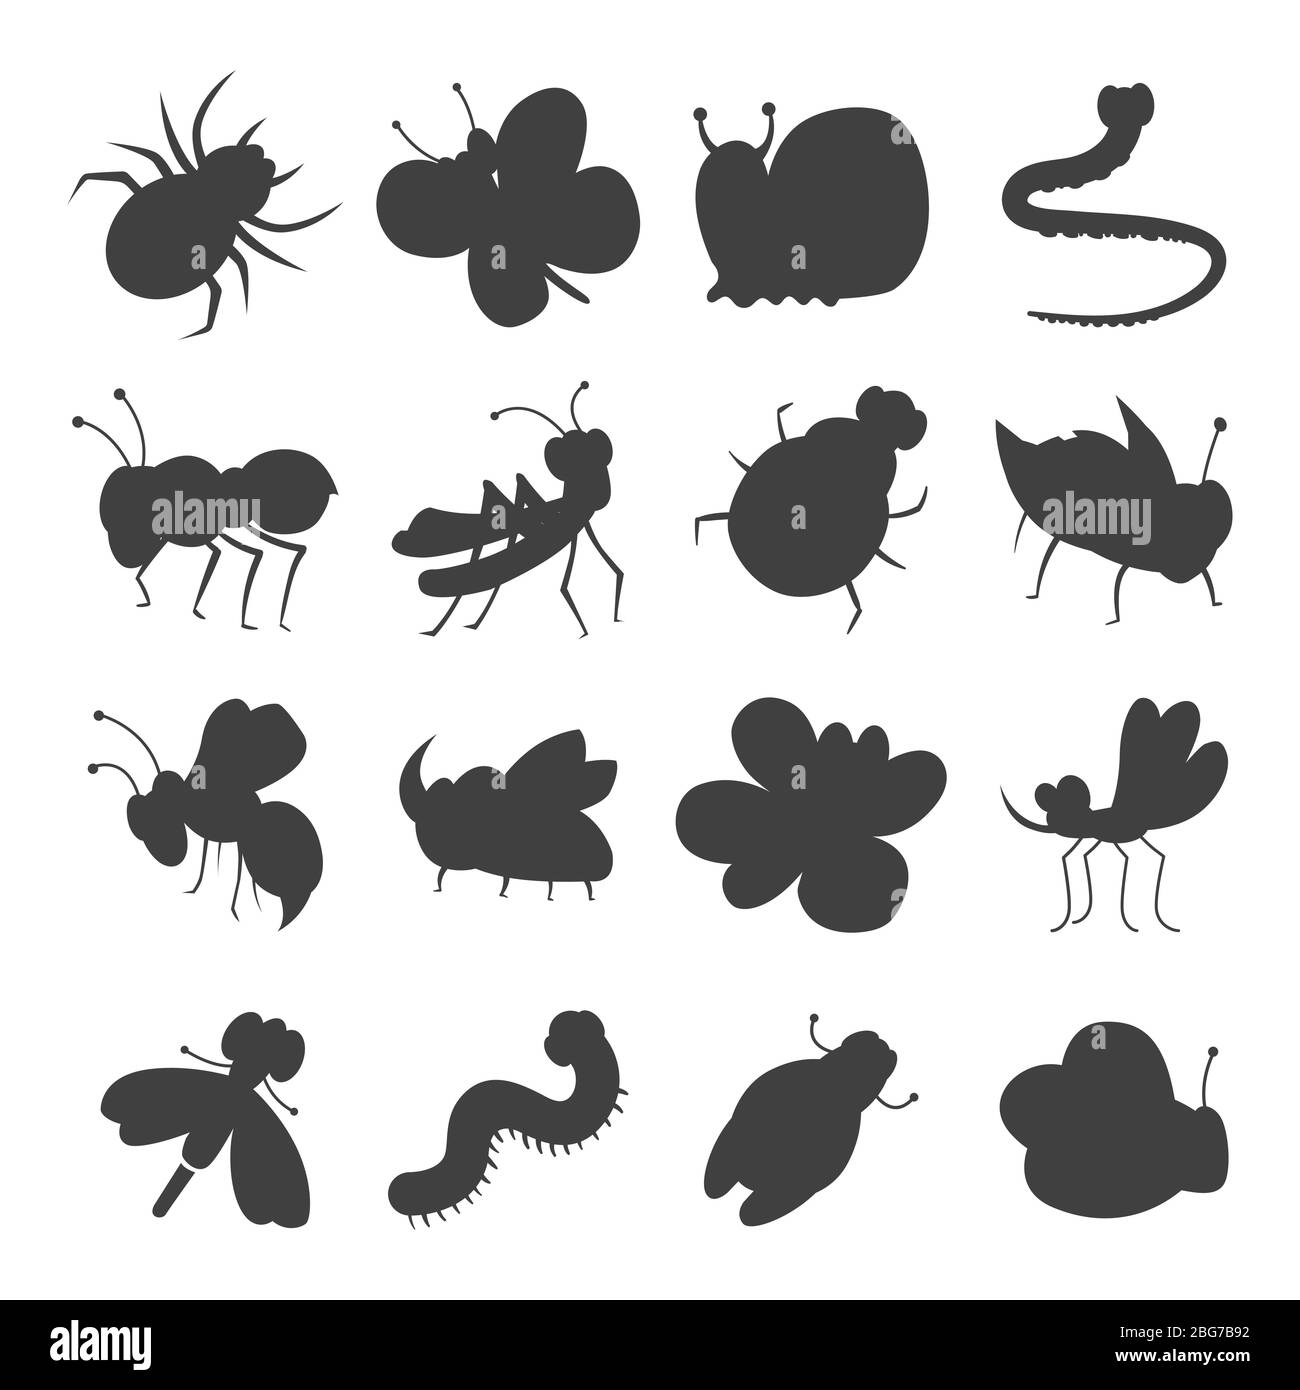 Graue Insekt Silhouette Symbole auf weißem Hintergrund isotiert. Vektorgrafik Stock Vektor